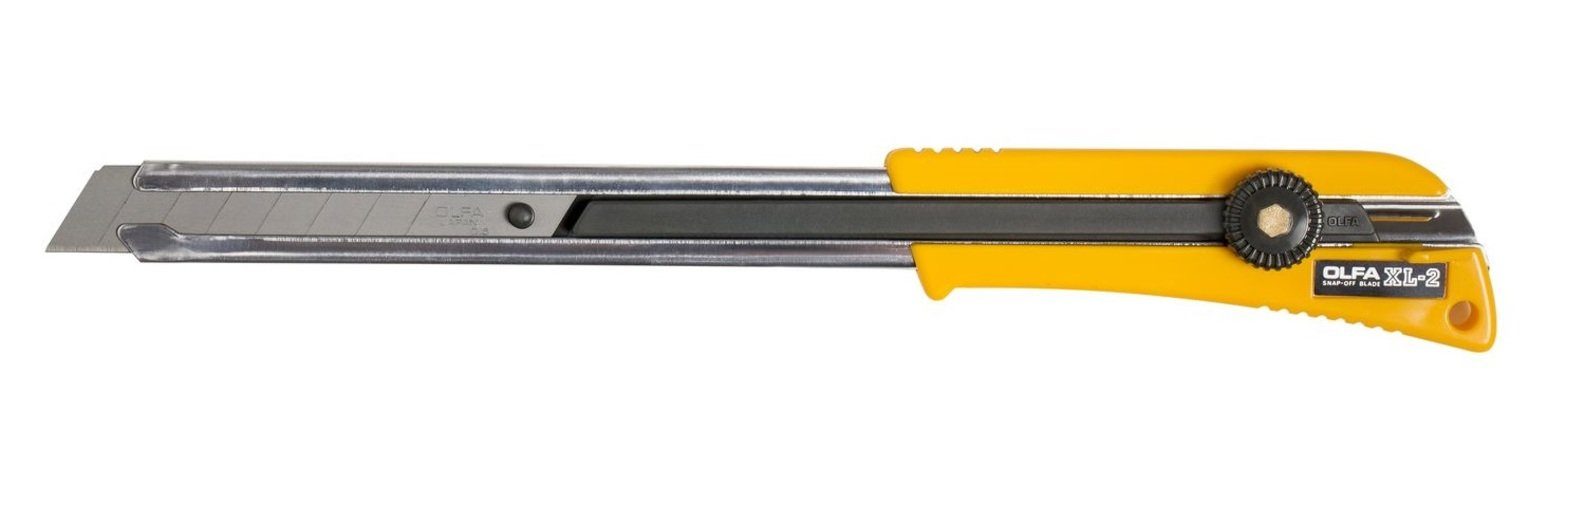 Olfa Cutter OLFA Cuttermesser XL-2 18mm mit extra langer Klinge für schwer erreichbare Stellen